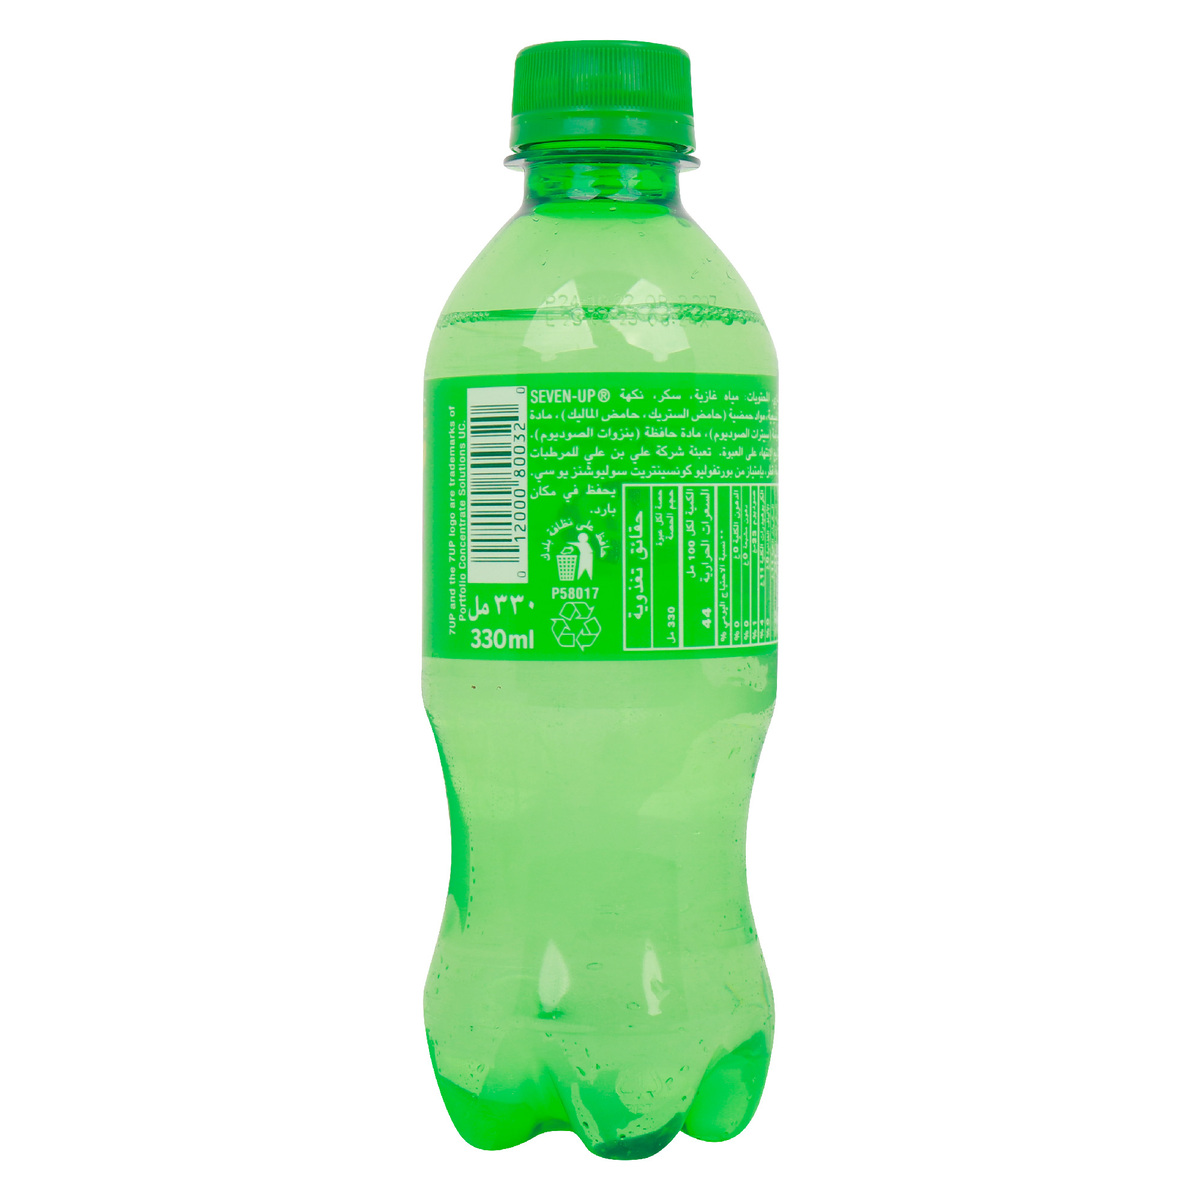 7Up Bottle 330 ml